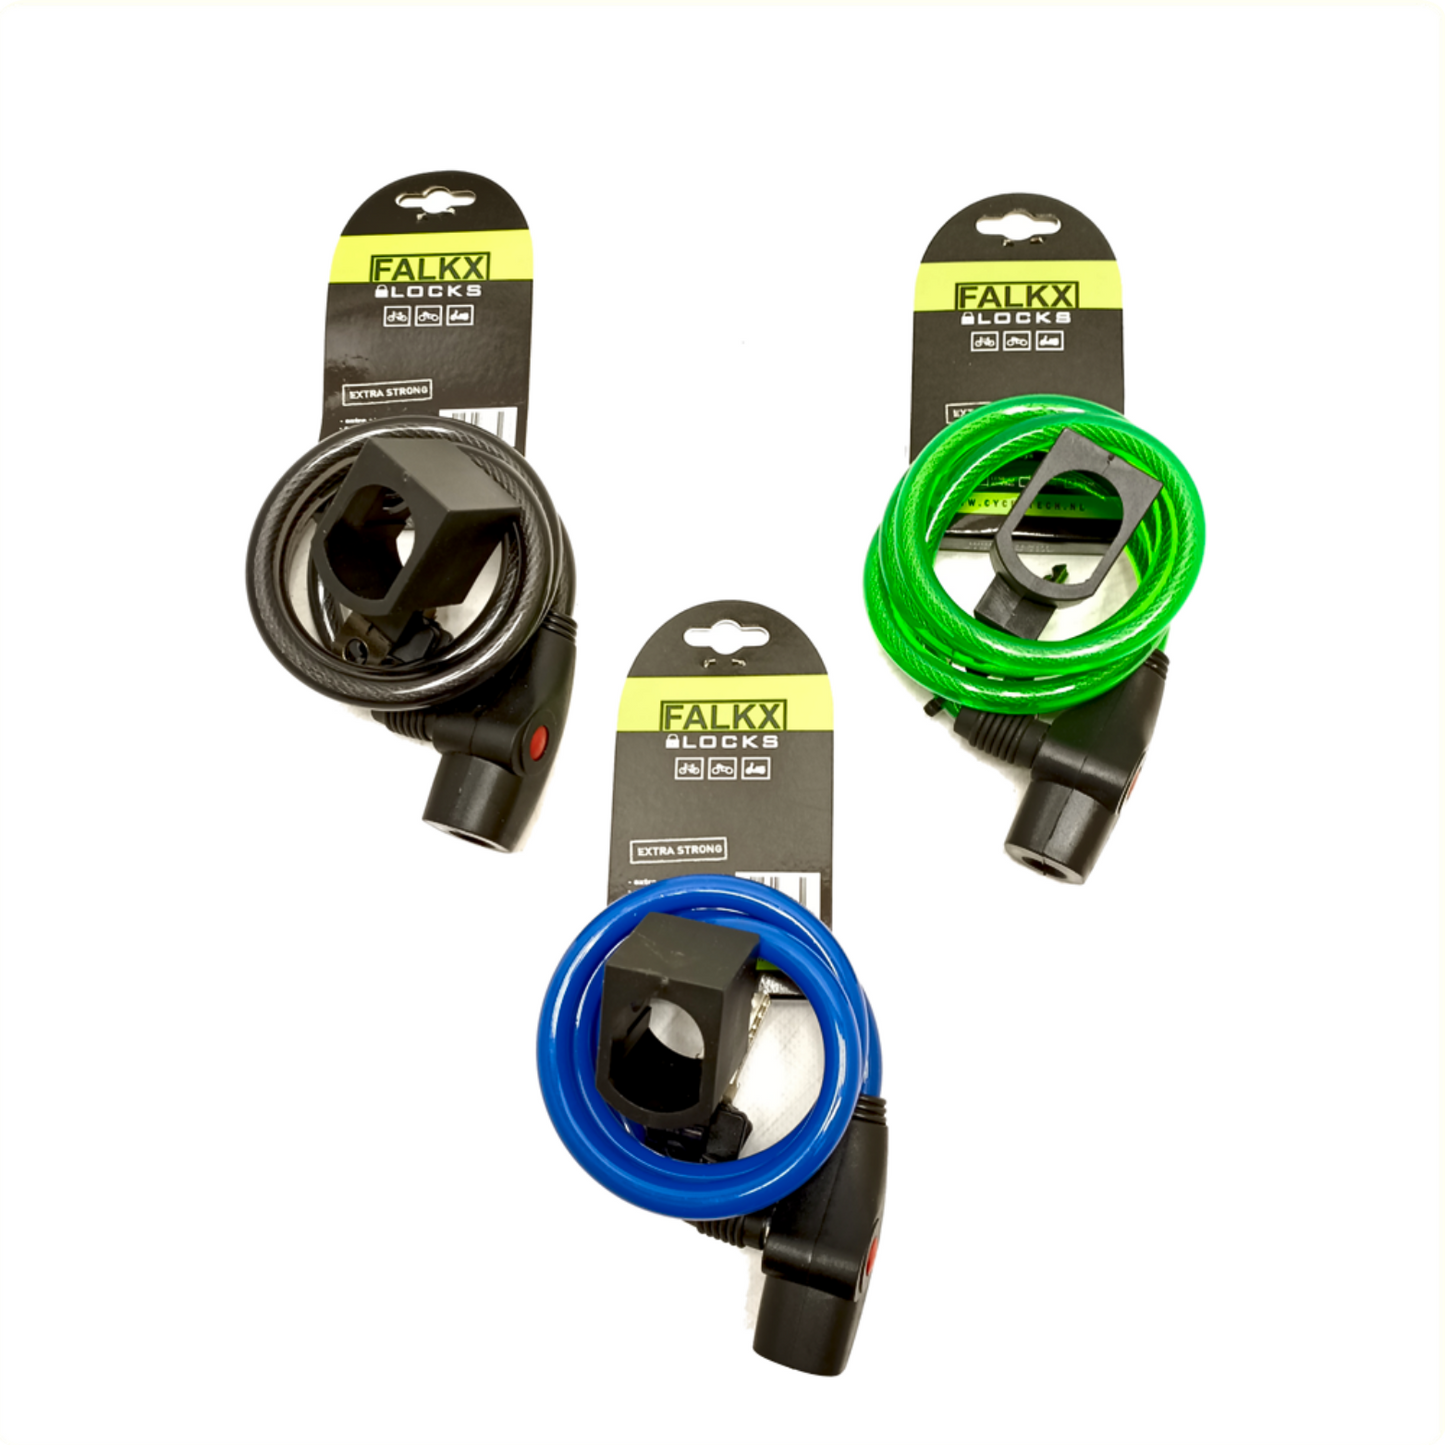 Falkx Falkx Spiral Cable Lock 1000x10mm con supporto, colore assorti. Imballaggio appeso